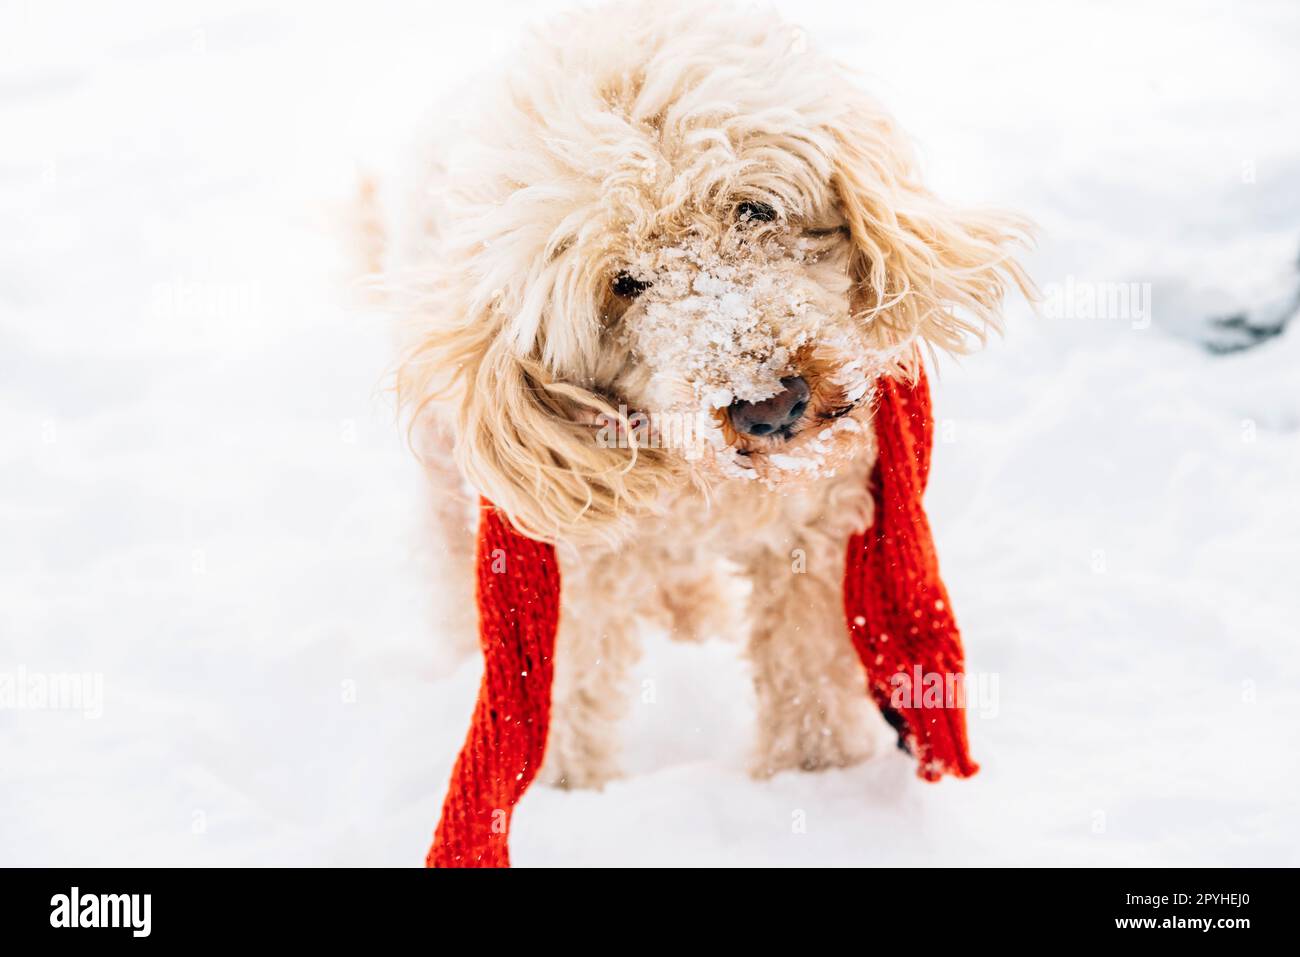 Simpatico e divertente cagnolino con sciarpa rossa che gioca e salta nella neve. Foto Stock